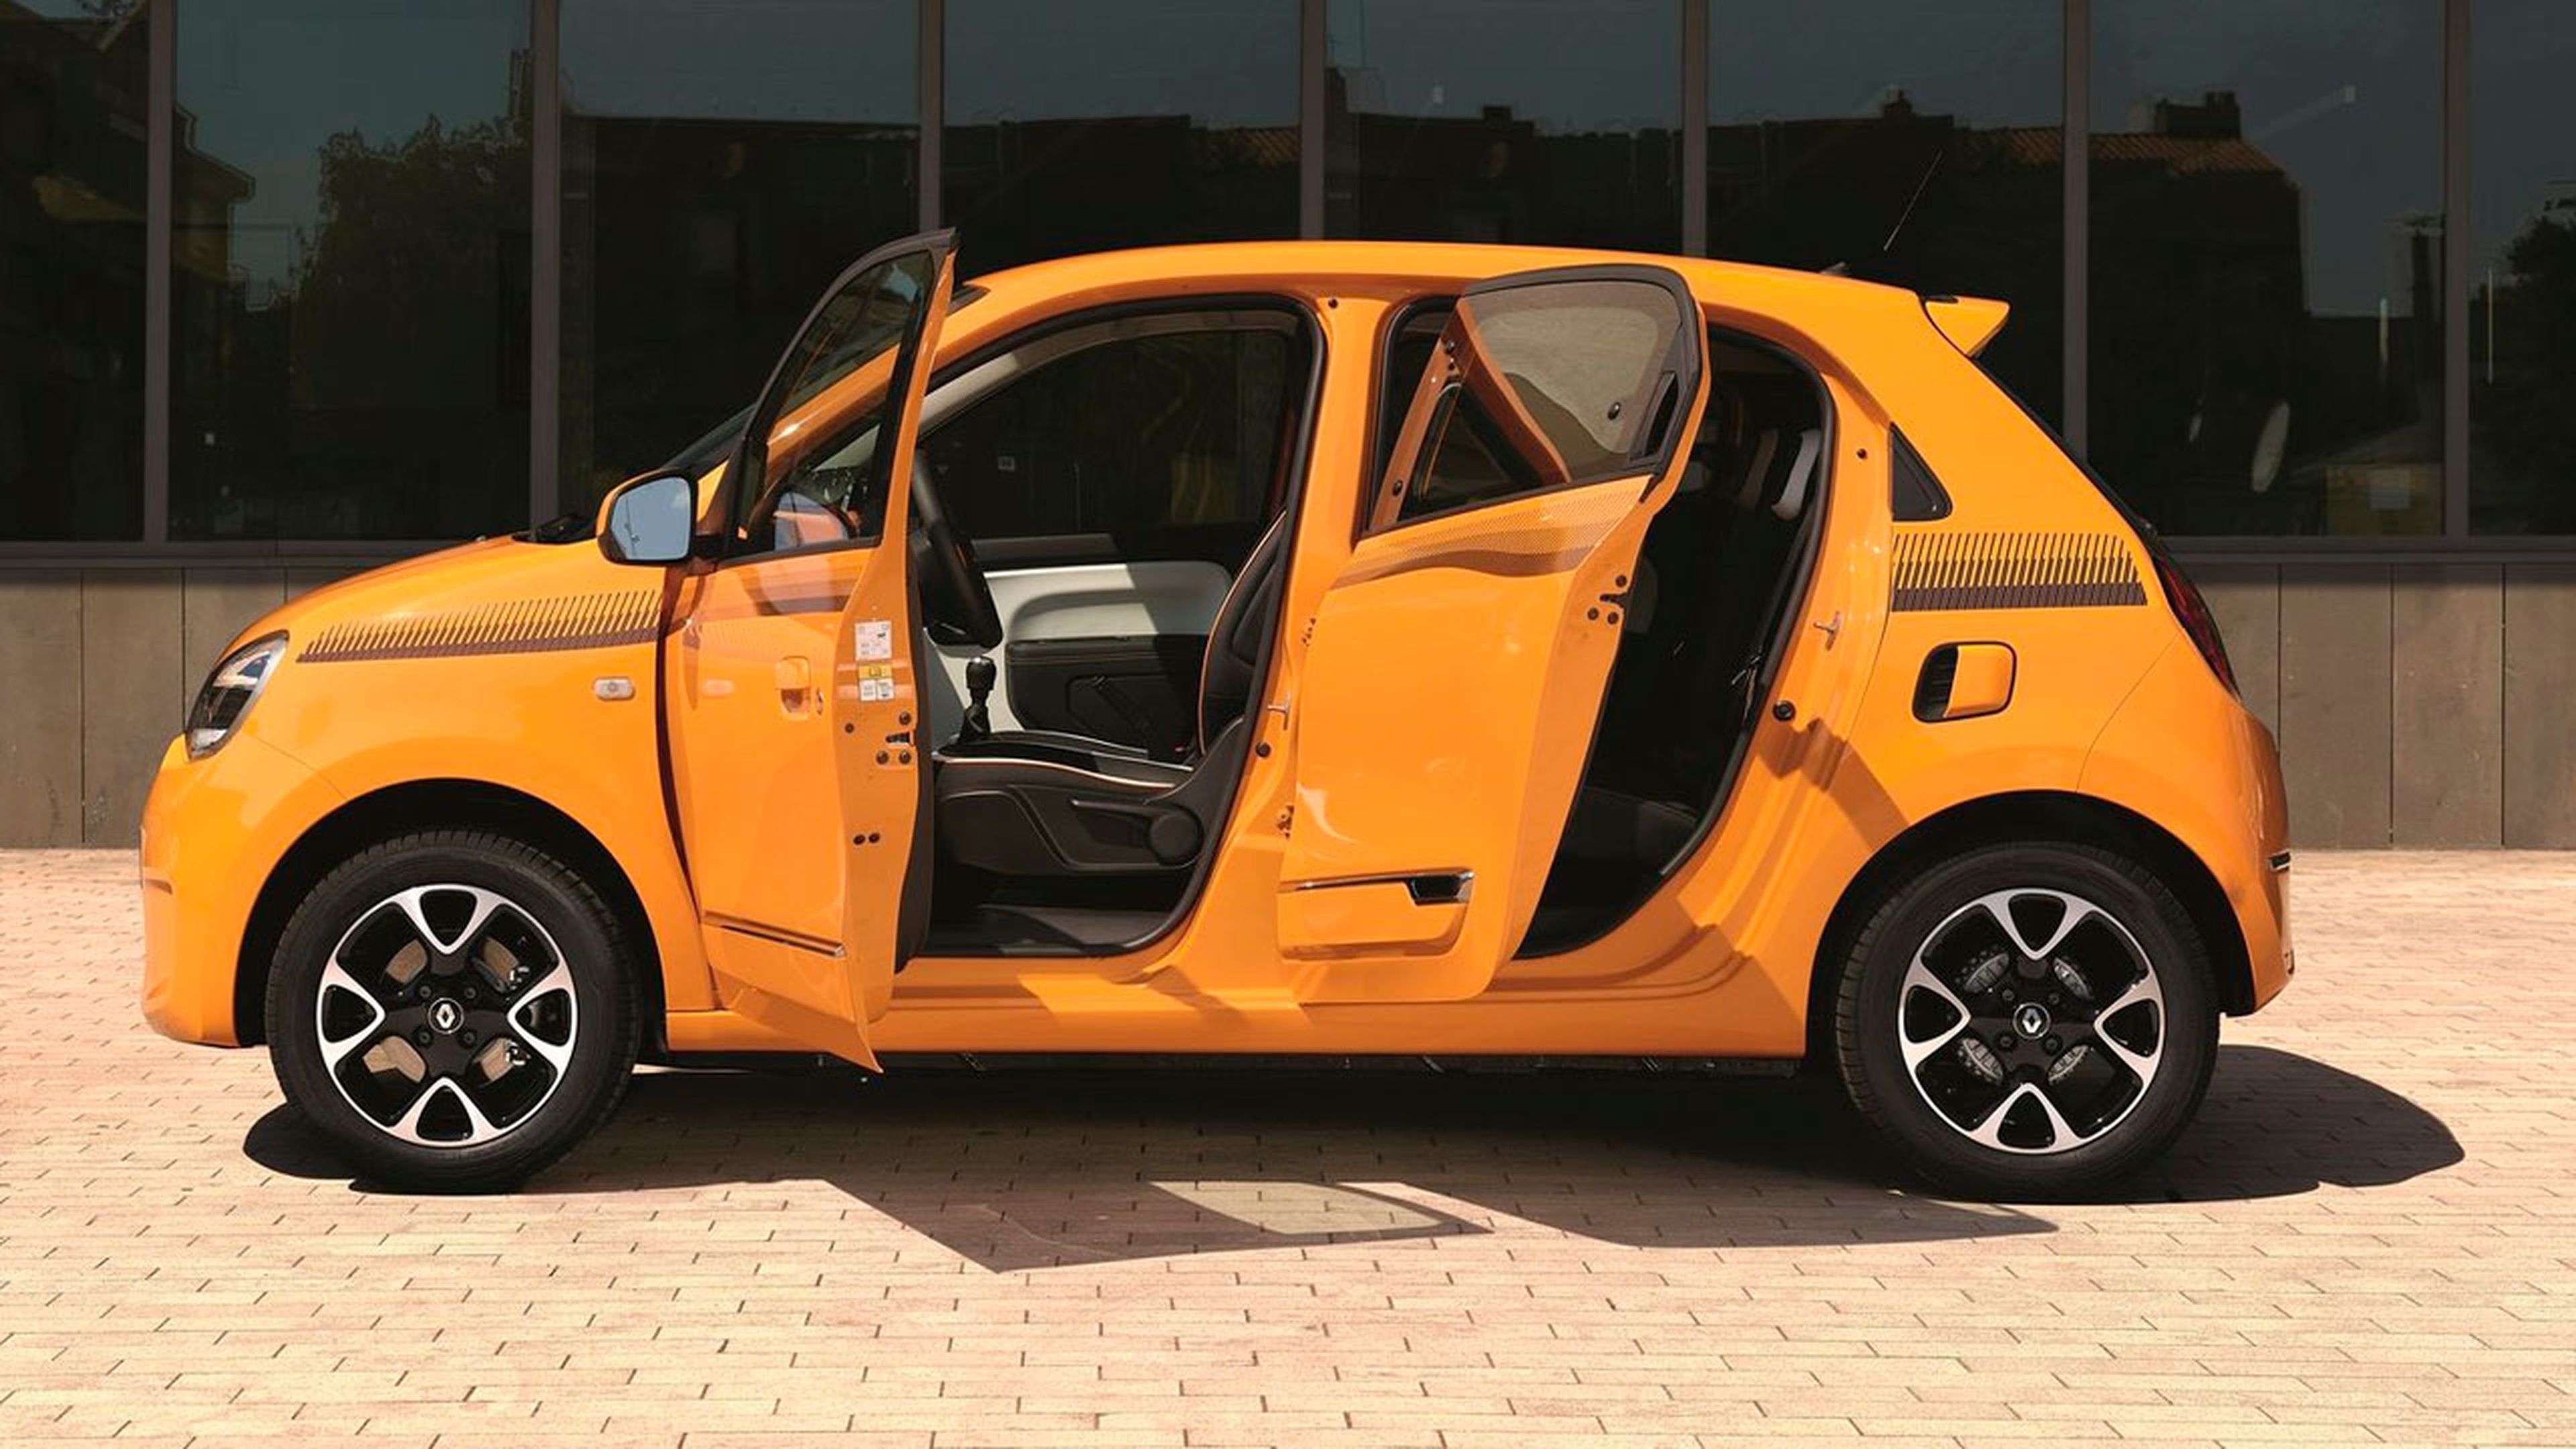 Un punto negativo: el Renault Twingo solo tiene cuatro plazas